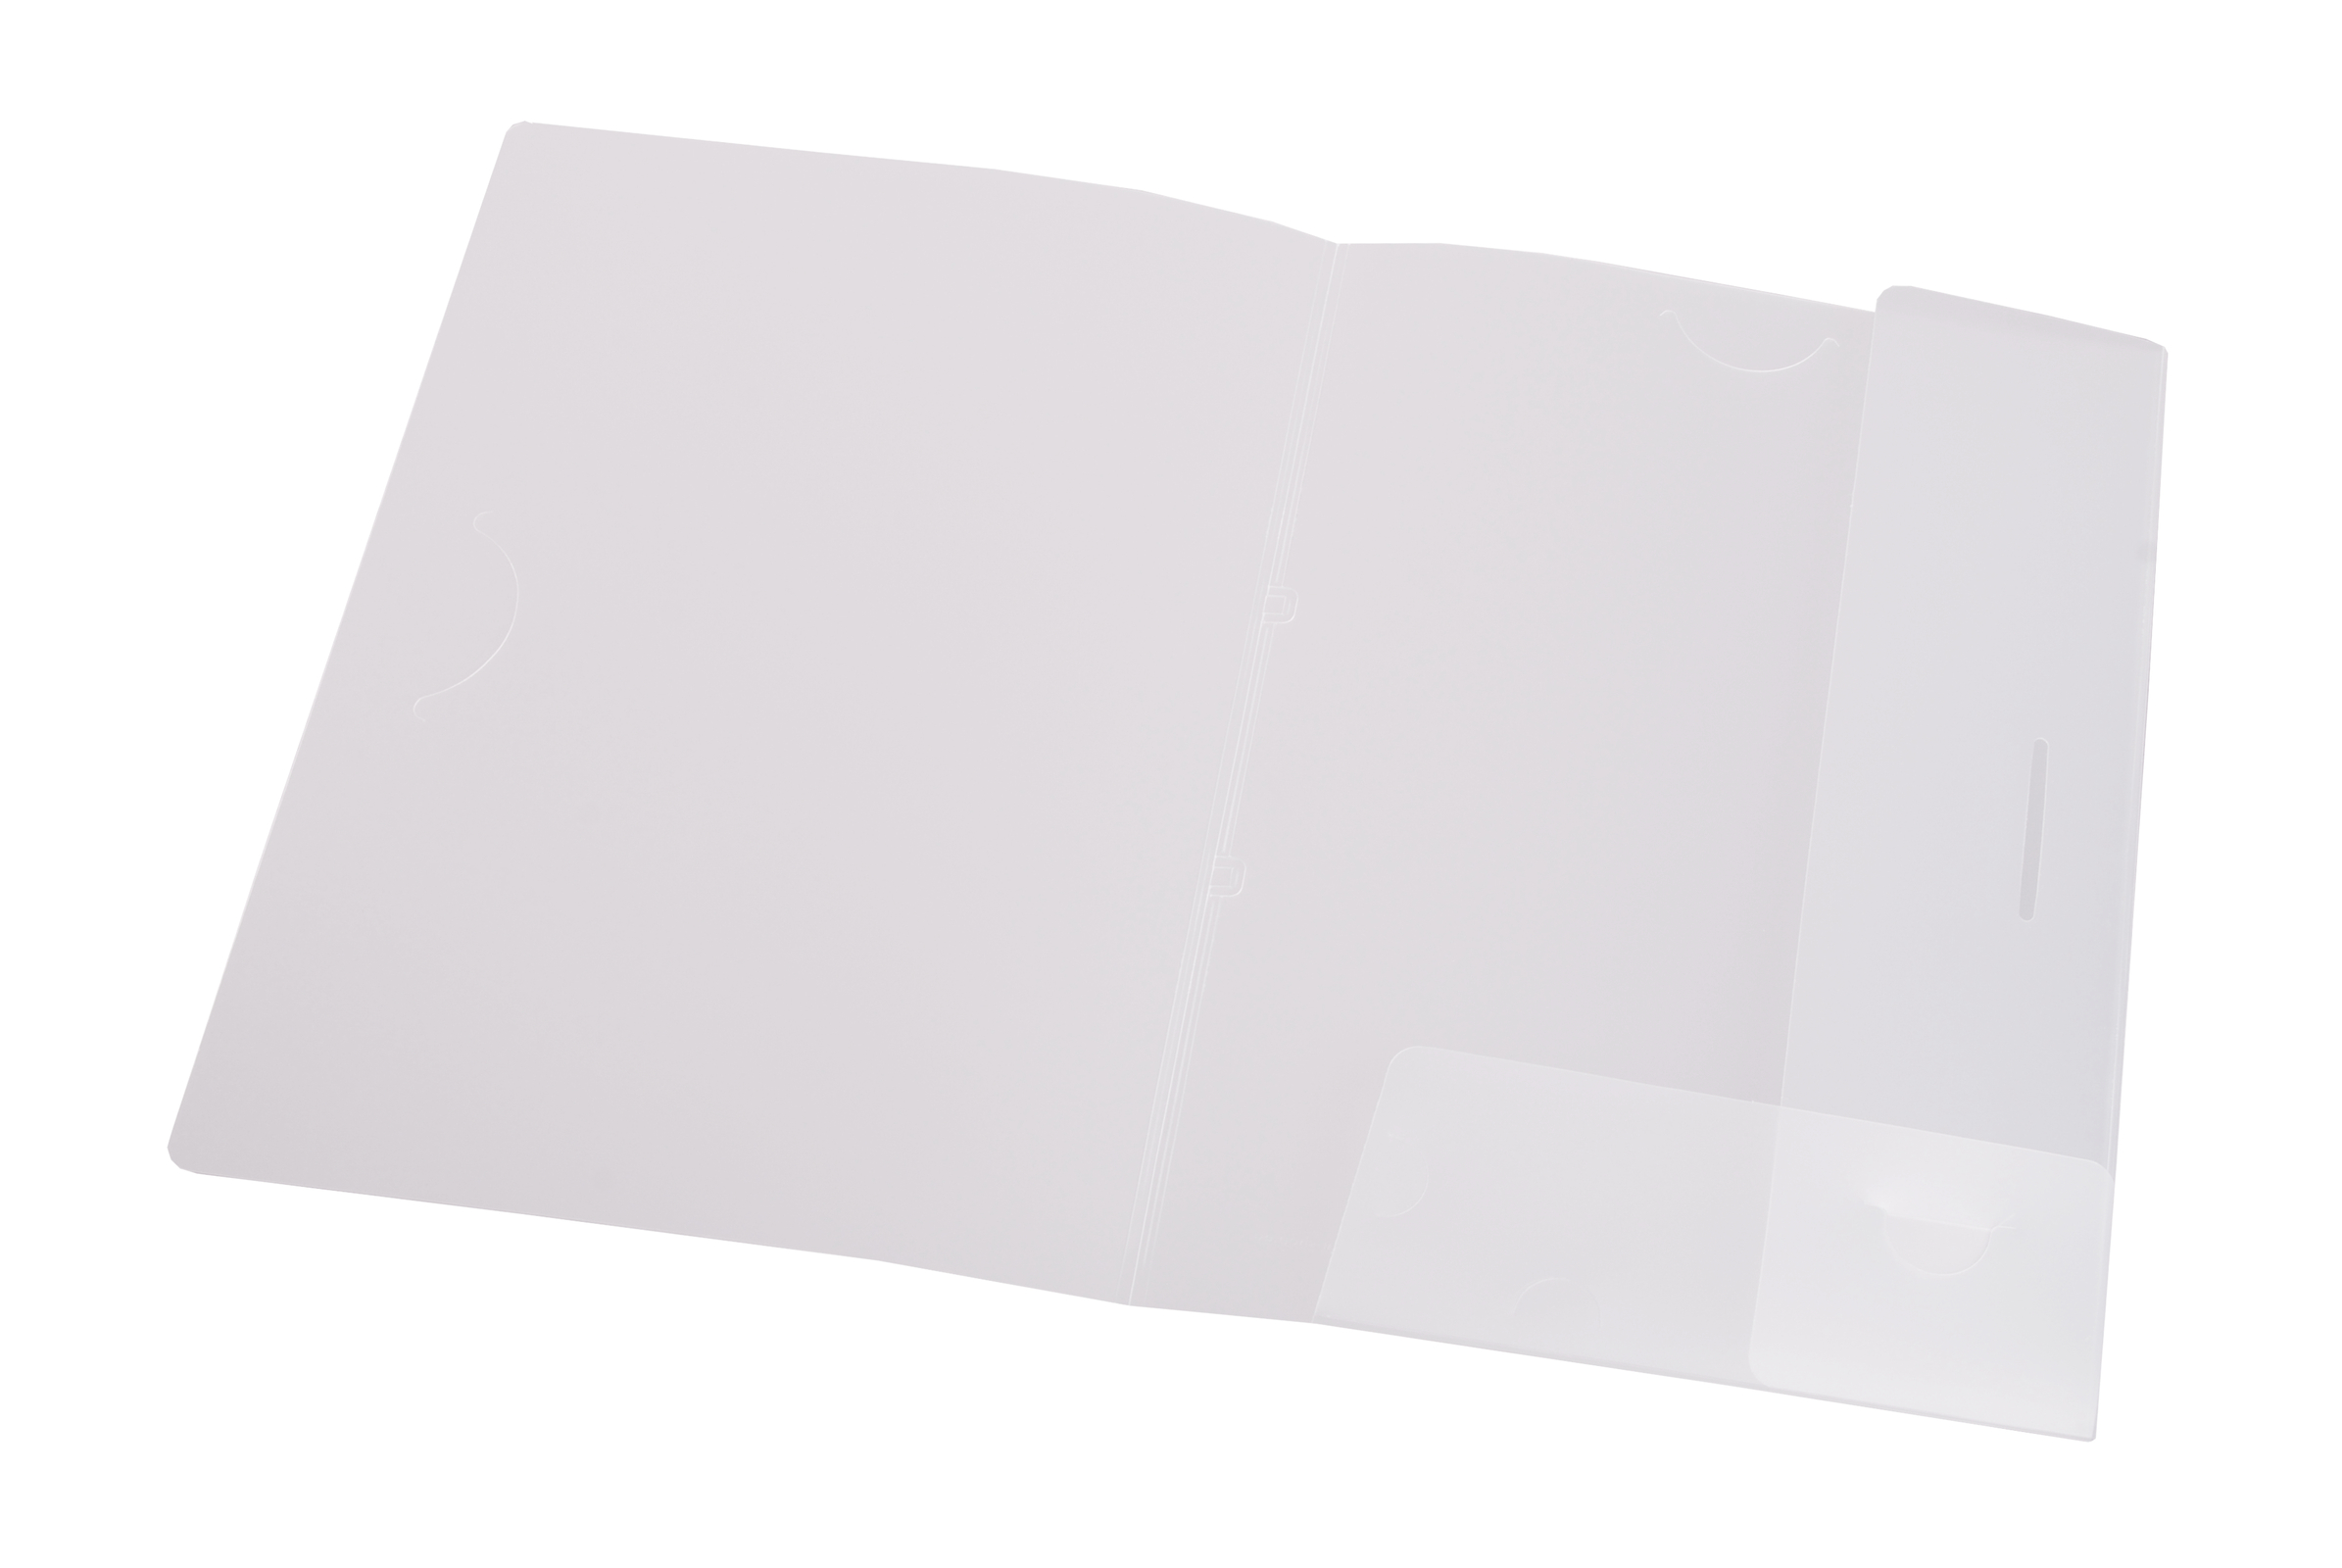 Tender document folder with closing flap - EICHNER - Ihr Spezialist für ...